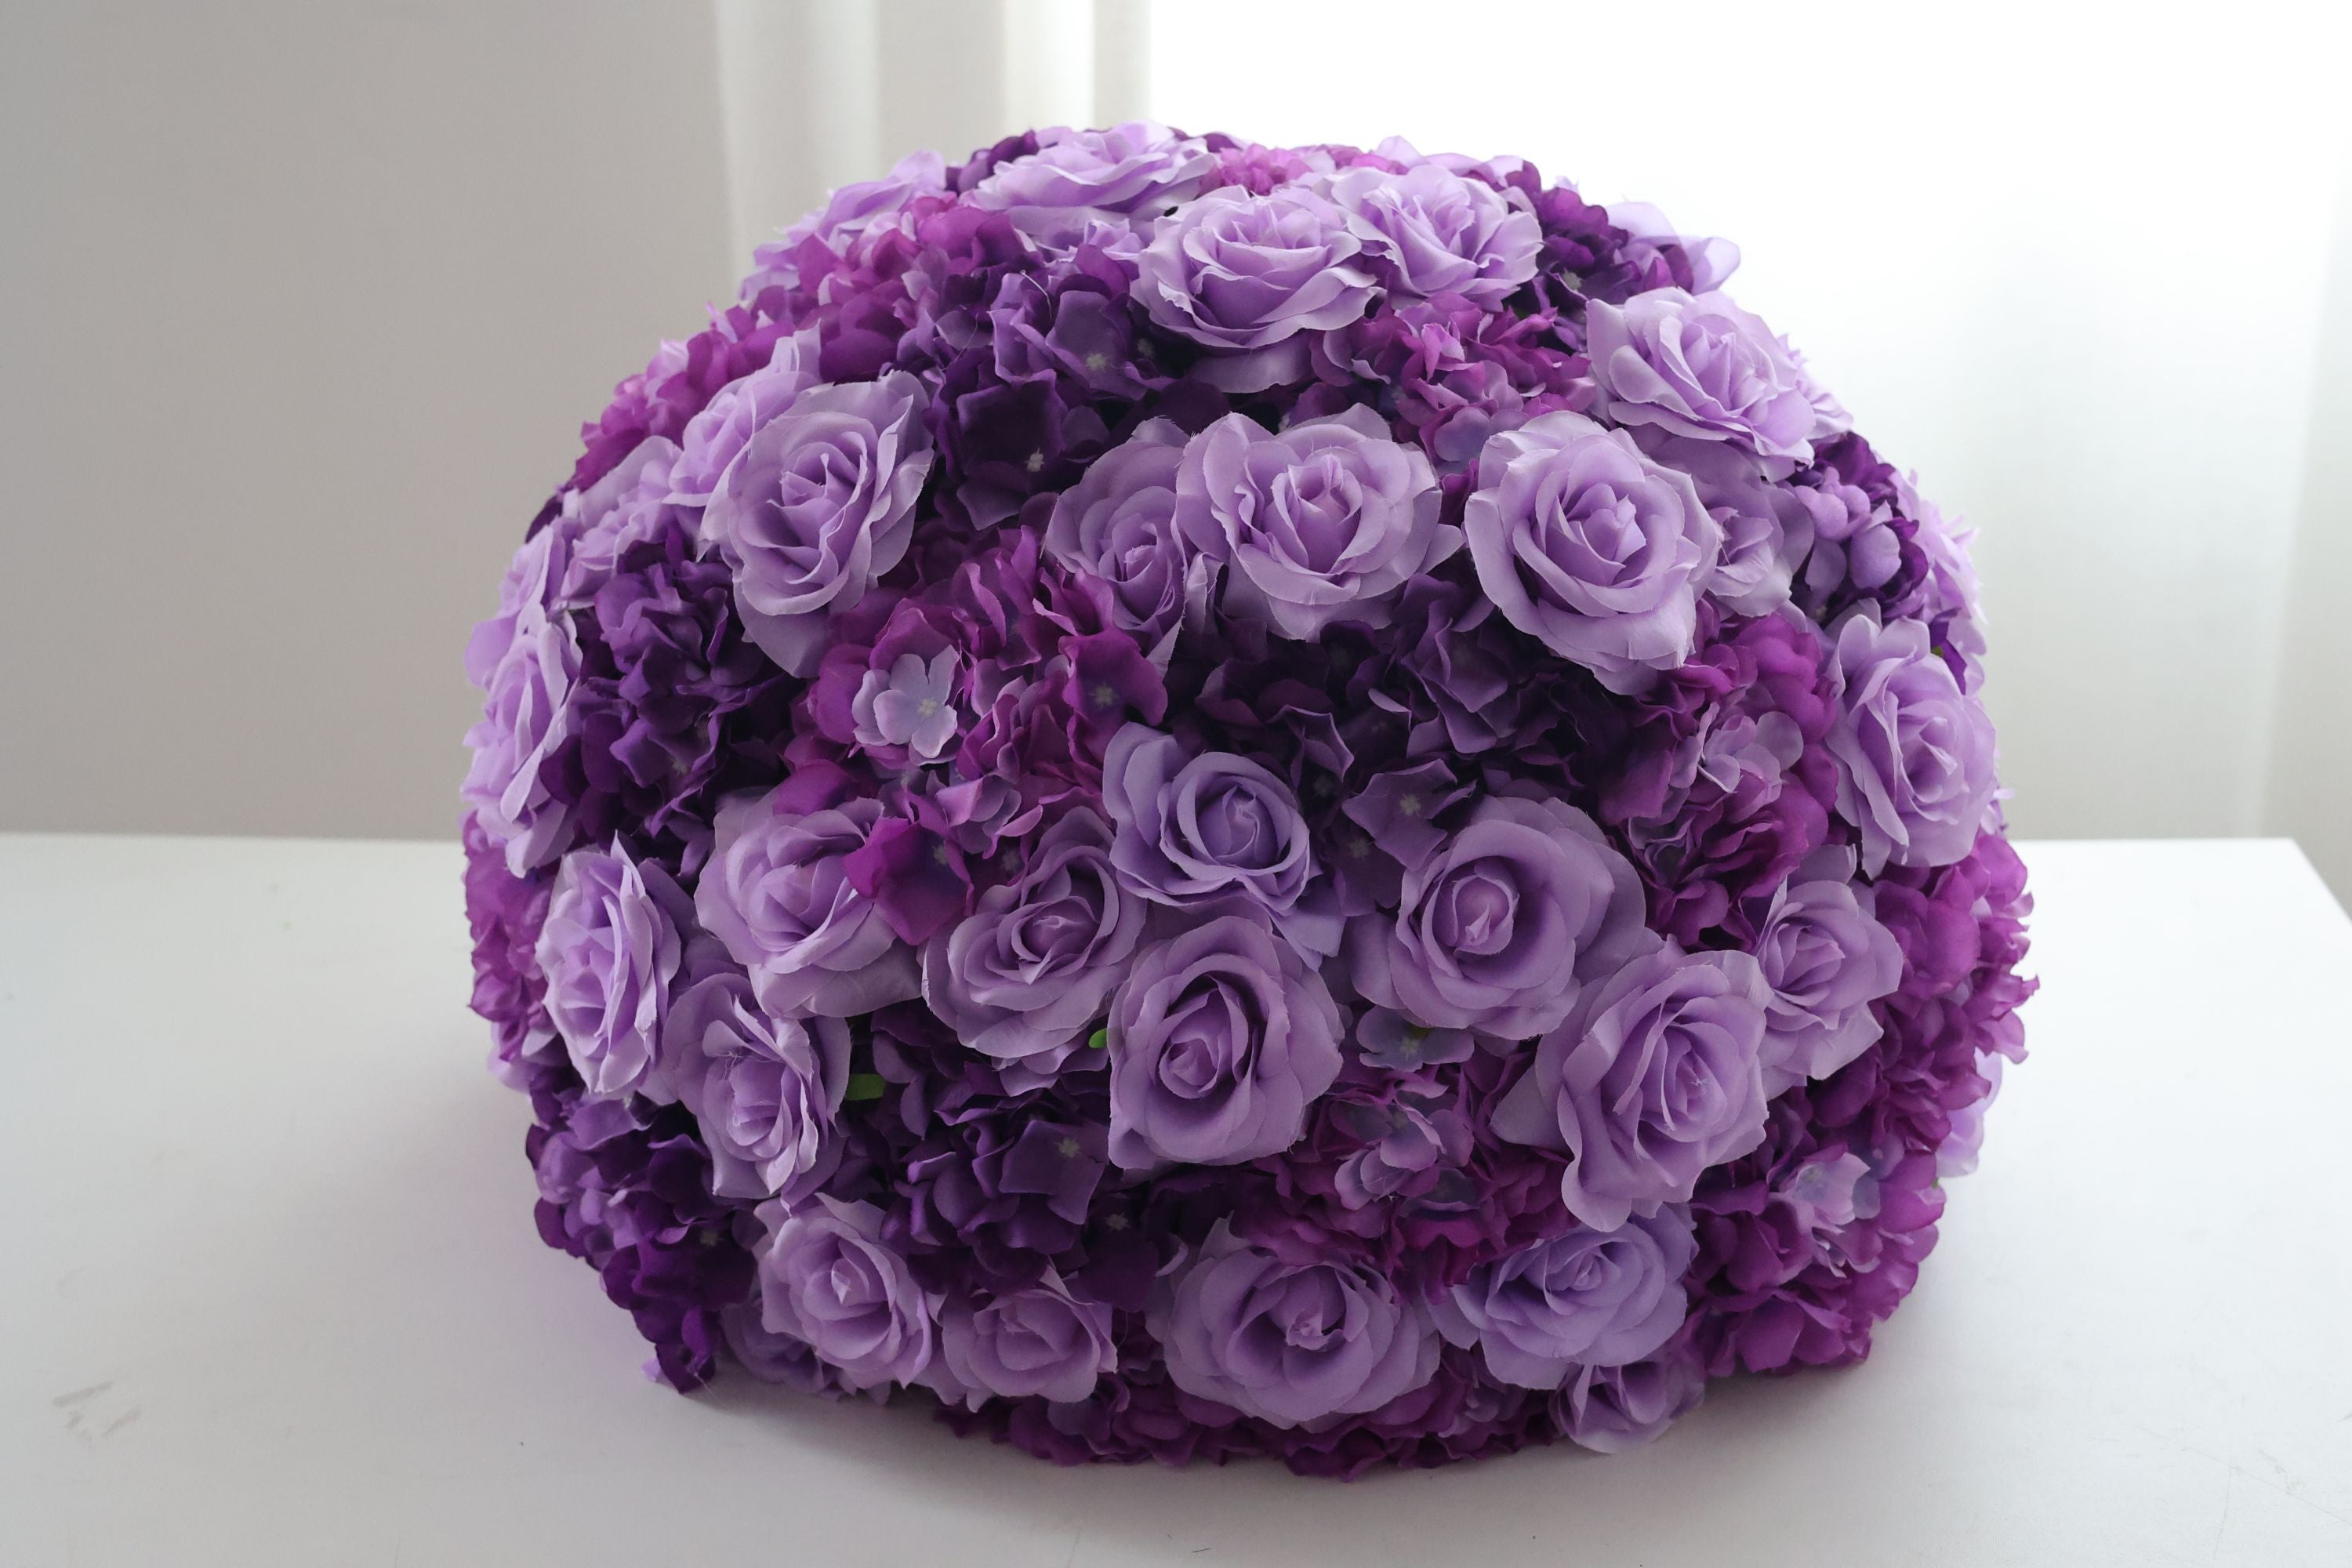 Purple/Pink Majesty - Romantique de roses roses/violettes en pleine floraison FB-070